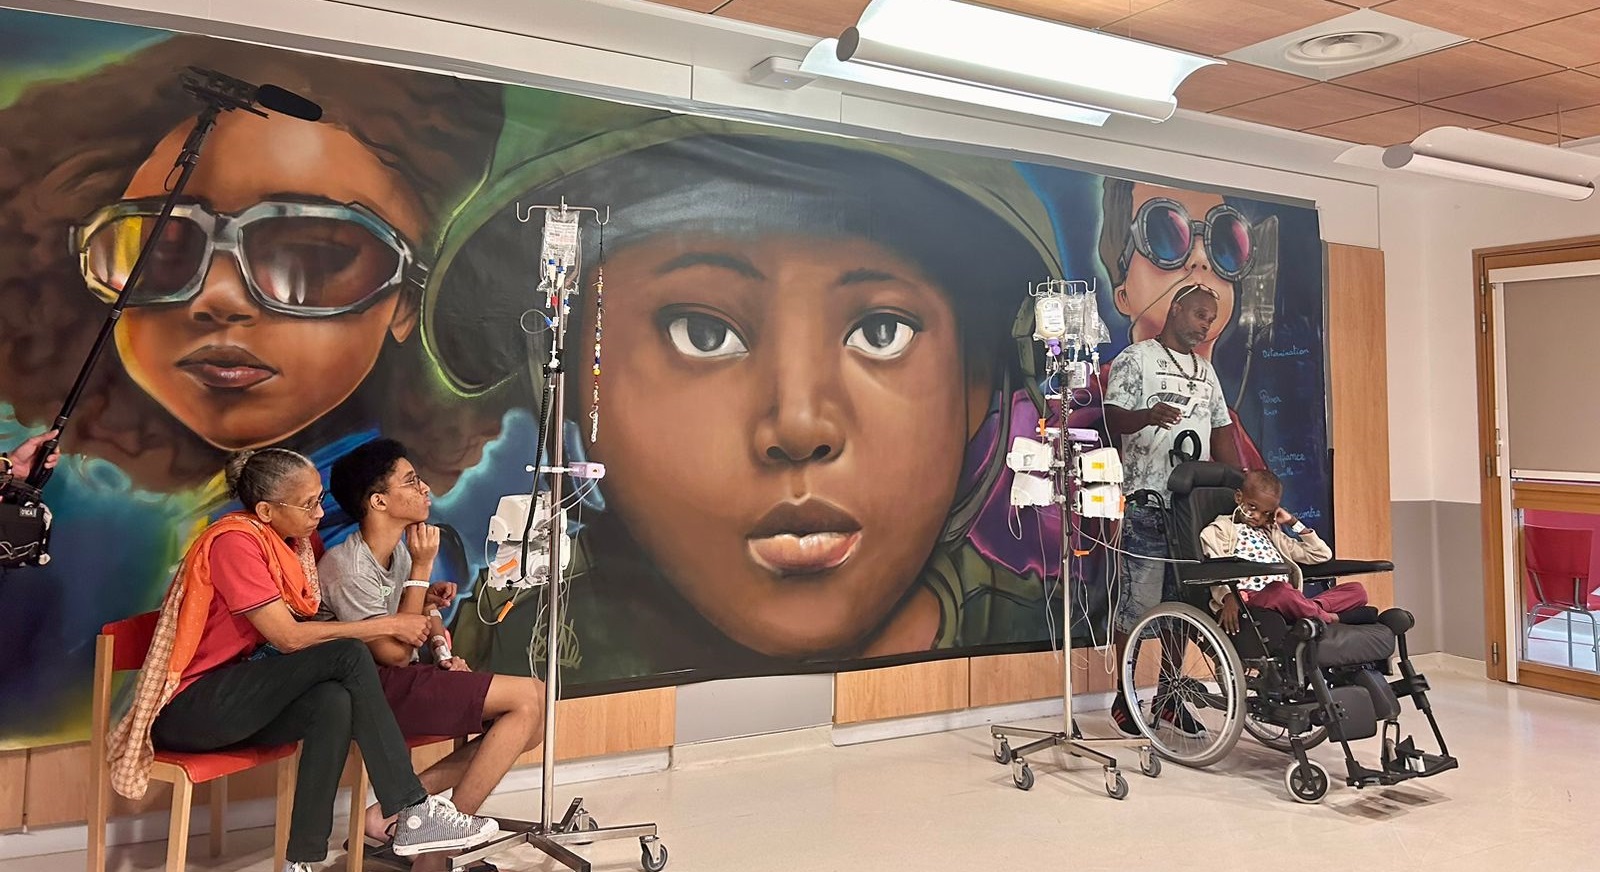     Une fresque itinérante en soutien aux enfants malades de Martinique s'installe en région parisienne

